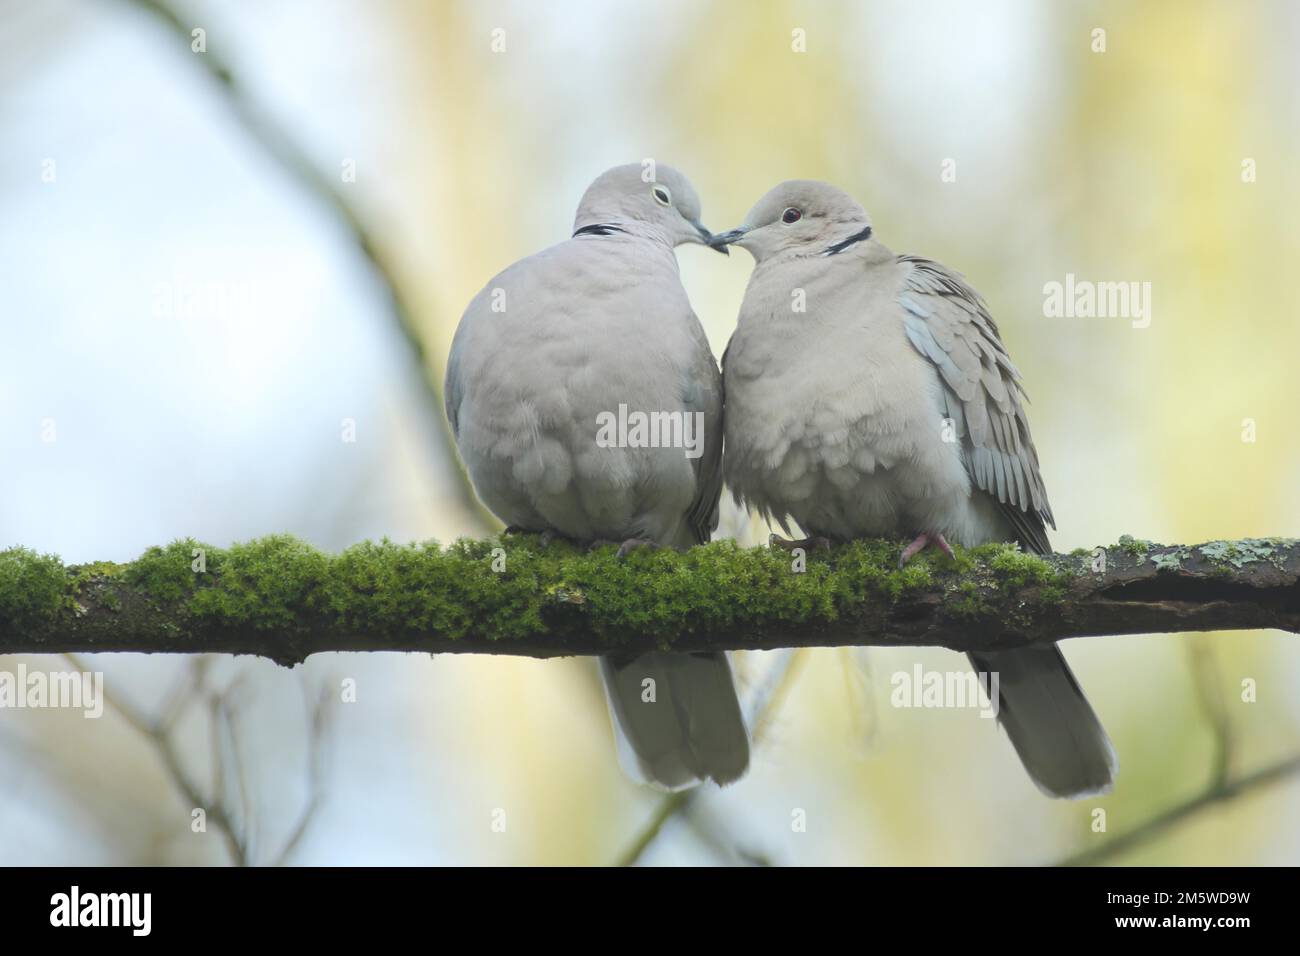 Ein Paar eurasische Kragen-Taube (Streptopelia decaocto) während der Bewerbung in Liebesspiel, Emotion, Kuscheln, Kuscheln, Zuneigung, Nähe Stockfoto